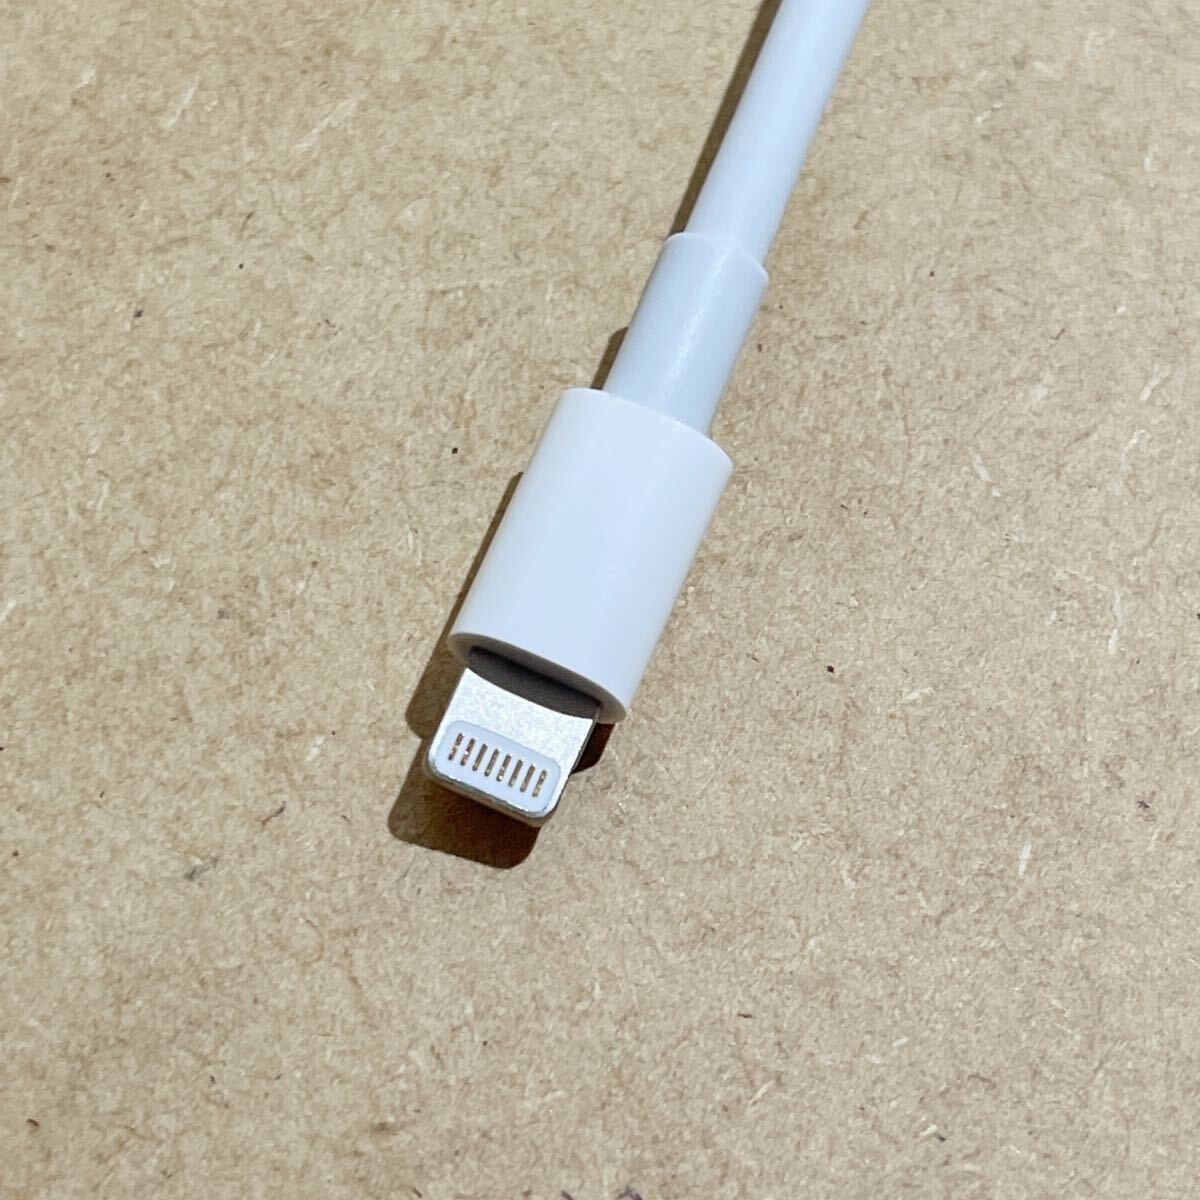 新品送料込 純正 Apple Lightning 30ピン 変換 アダプタ 0.2m iPod iPhone Dock ドックコネクタ pin ライトニング ケーブル 24時間以内発送_画像5